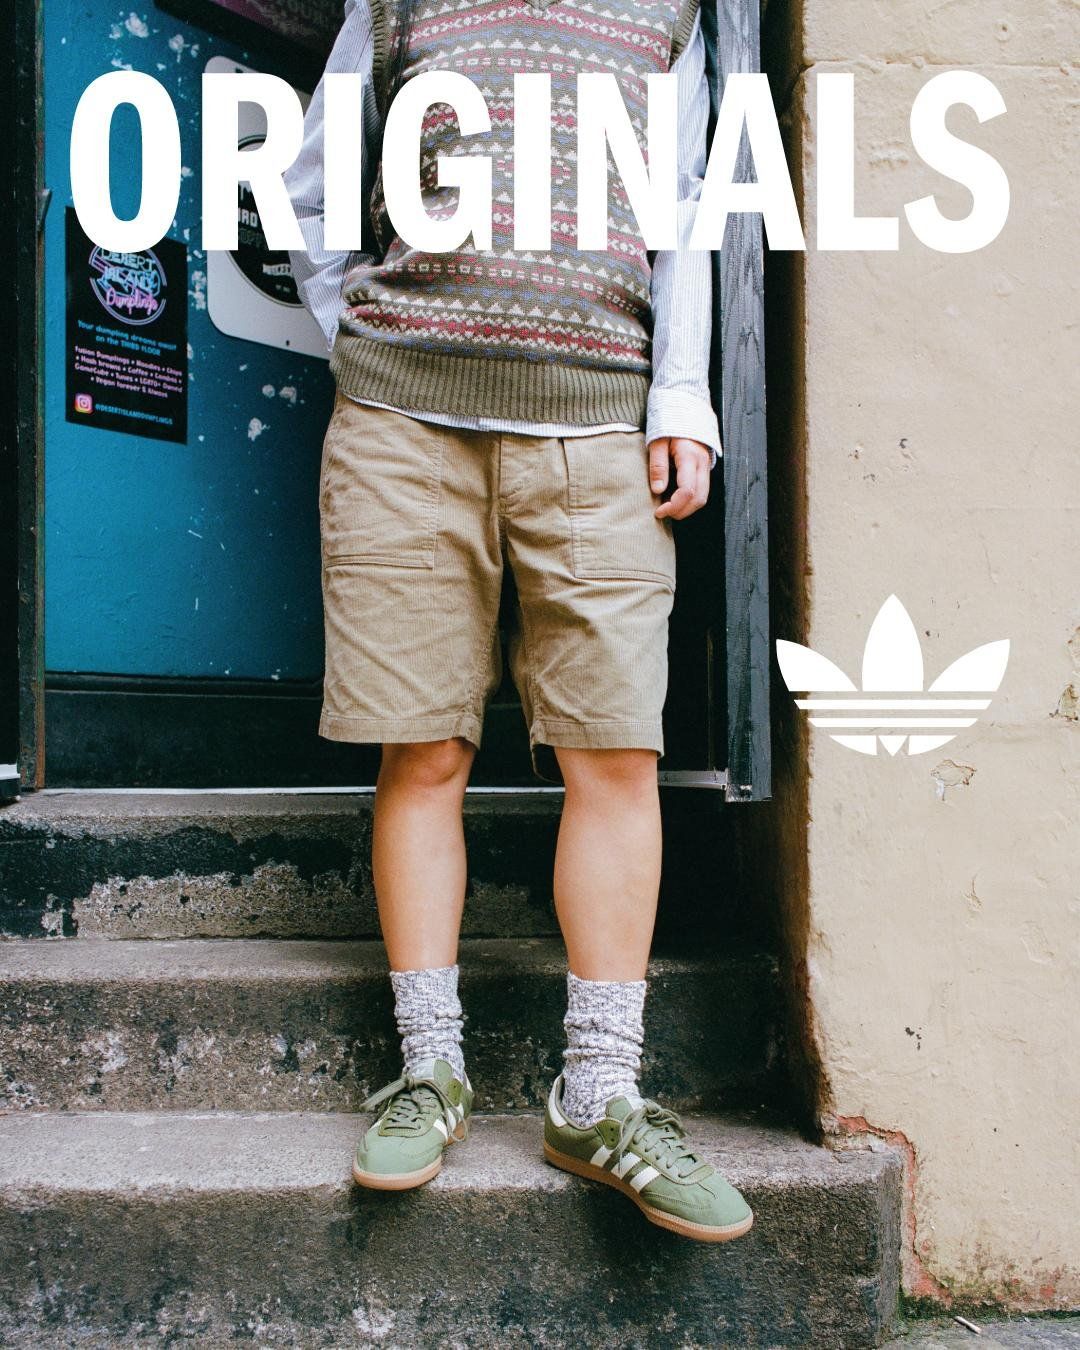 Adidas Originals Zx 700 Hd Cf I